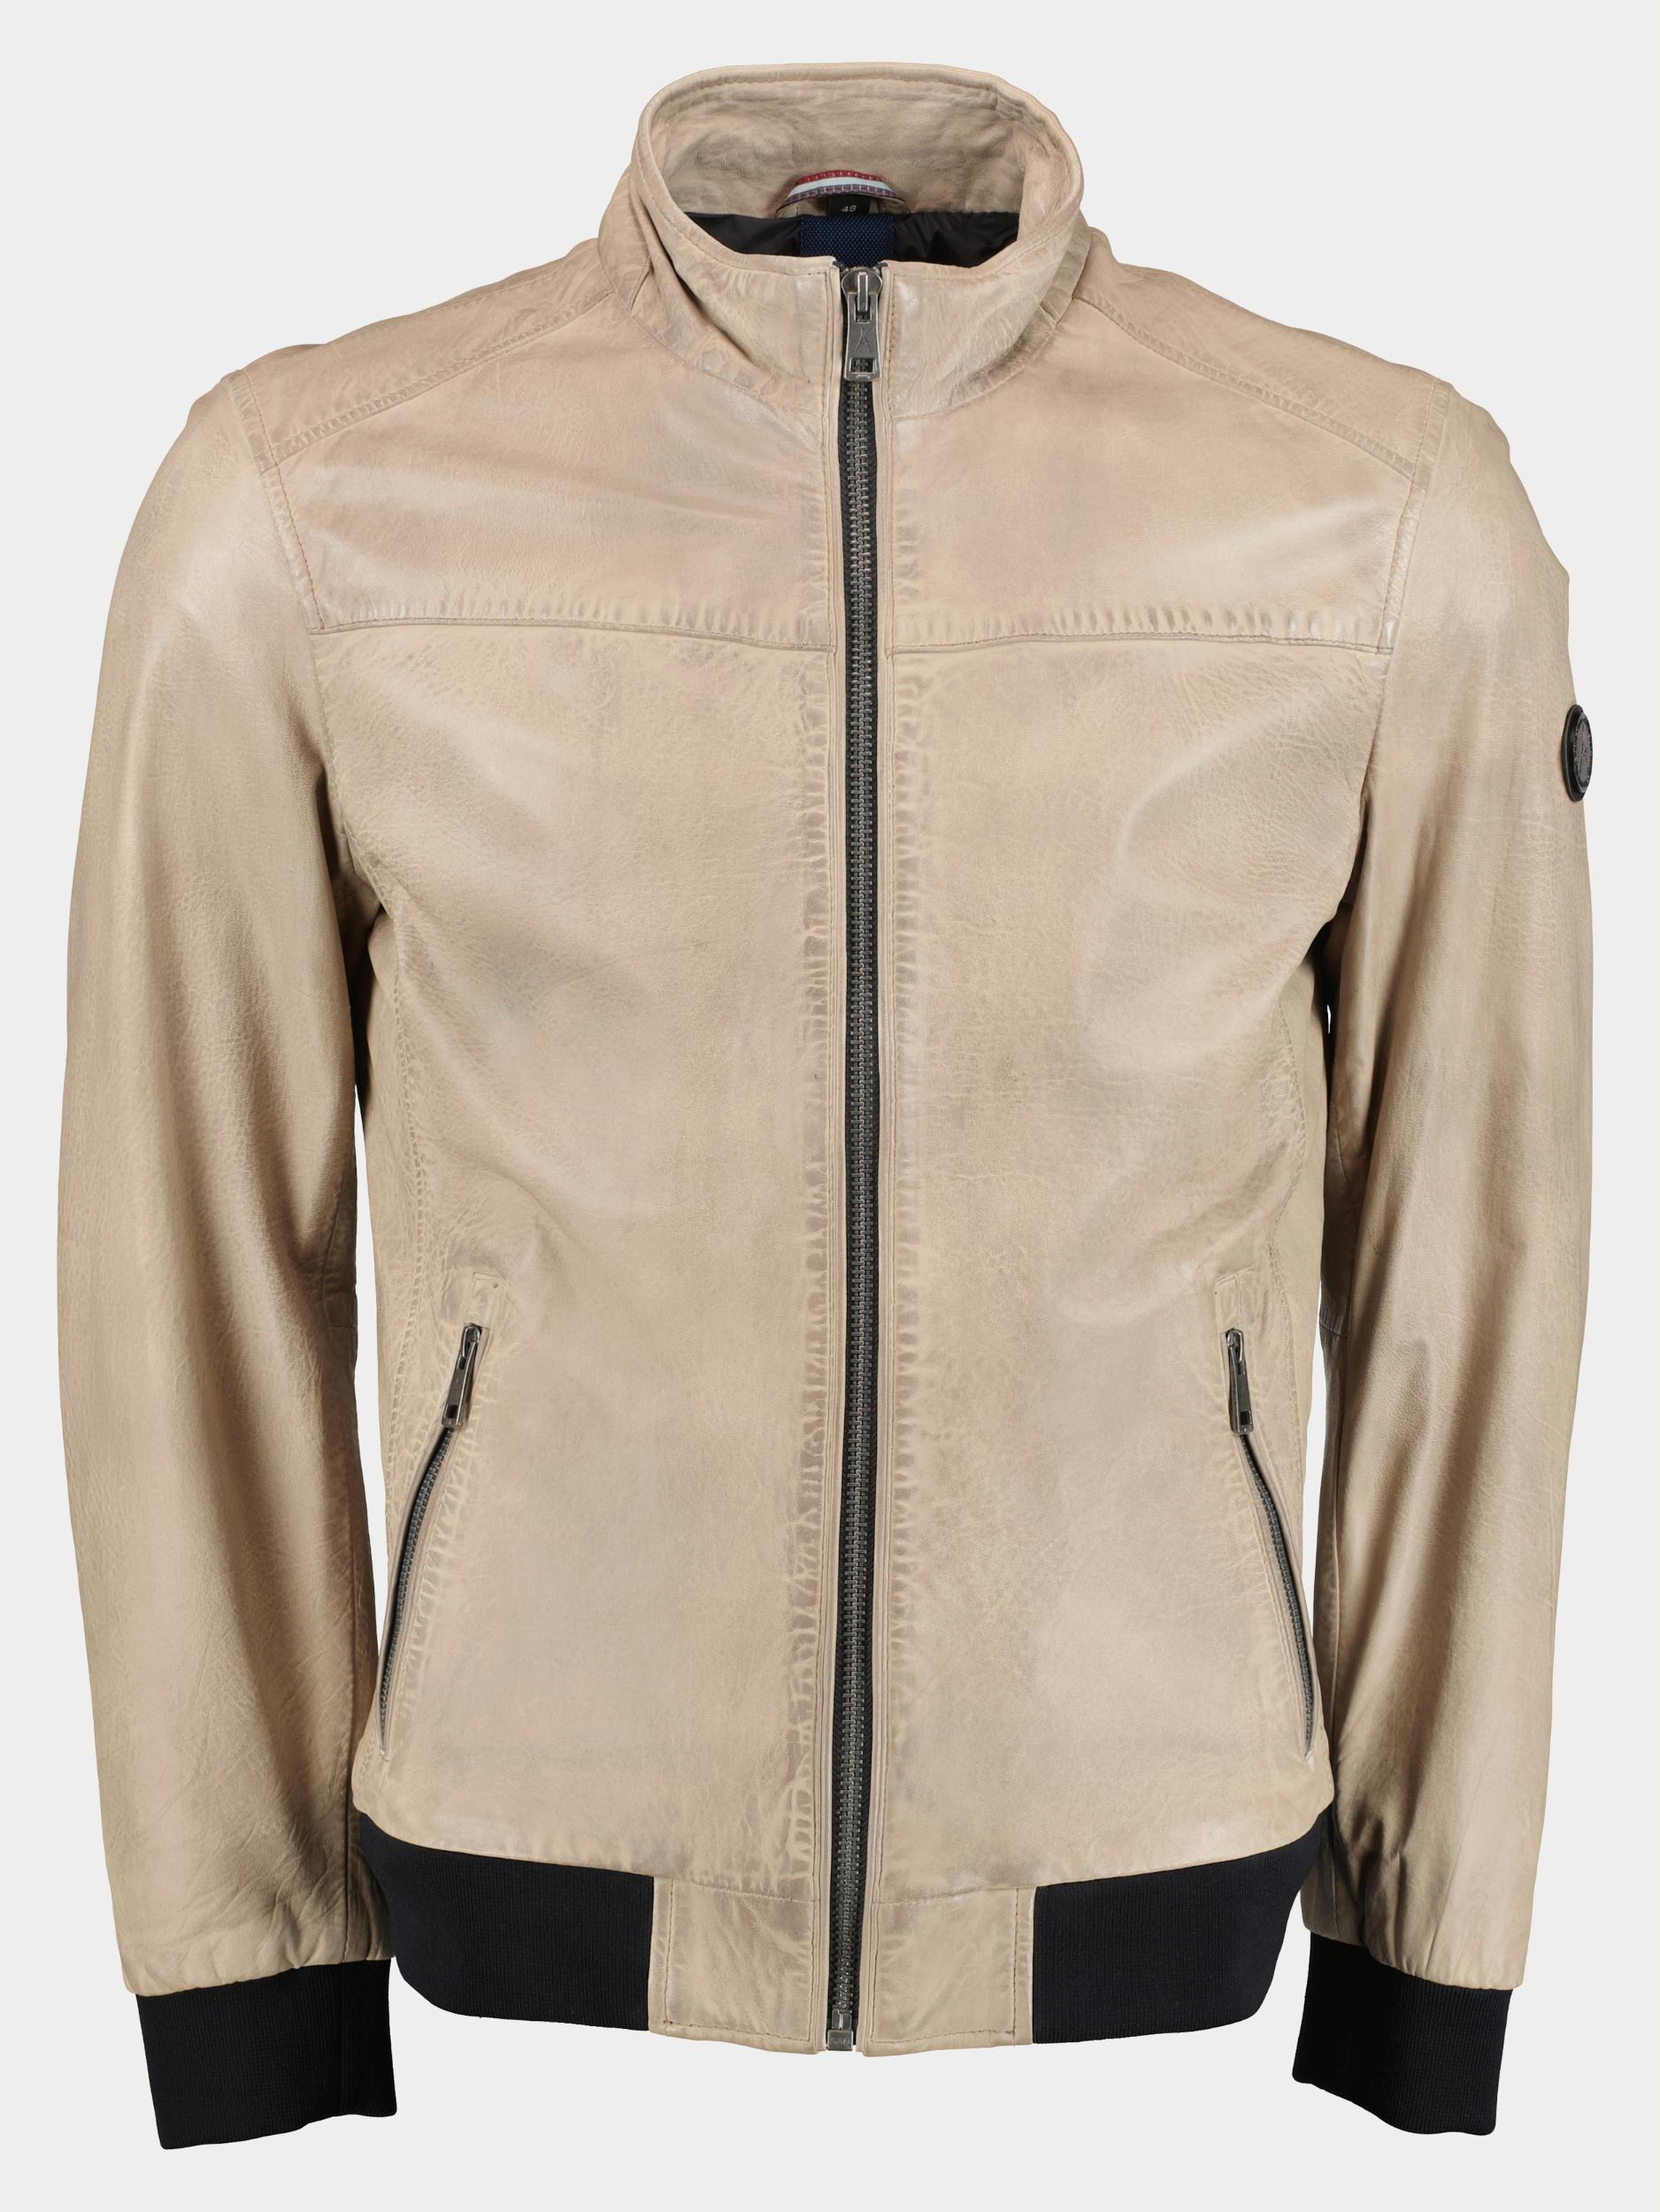 Donders 1860 Lederen jack Grijs Leather Jacket 52284/140